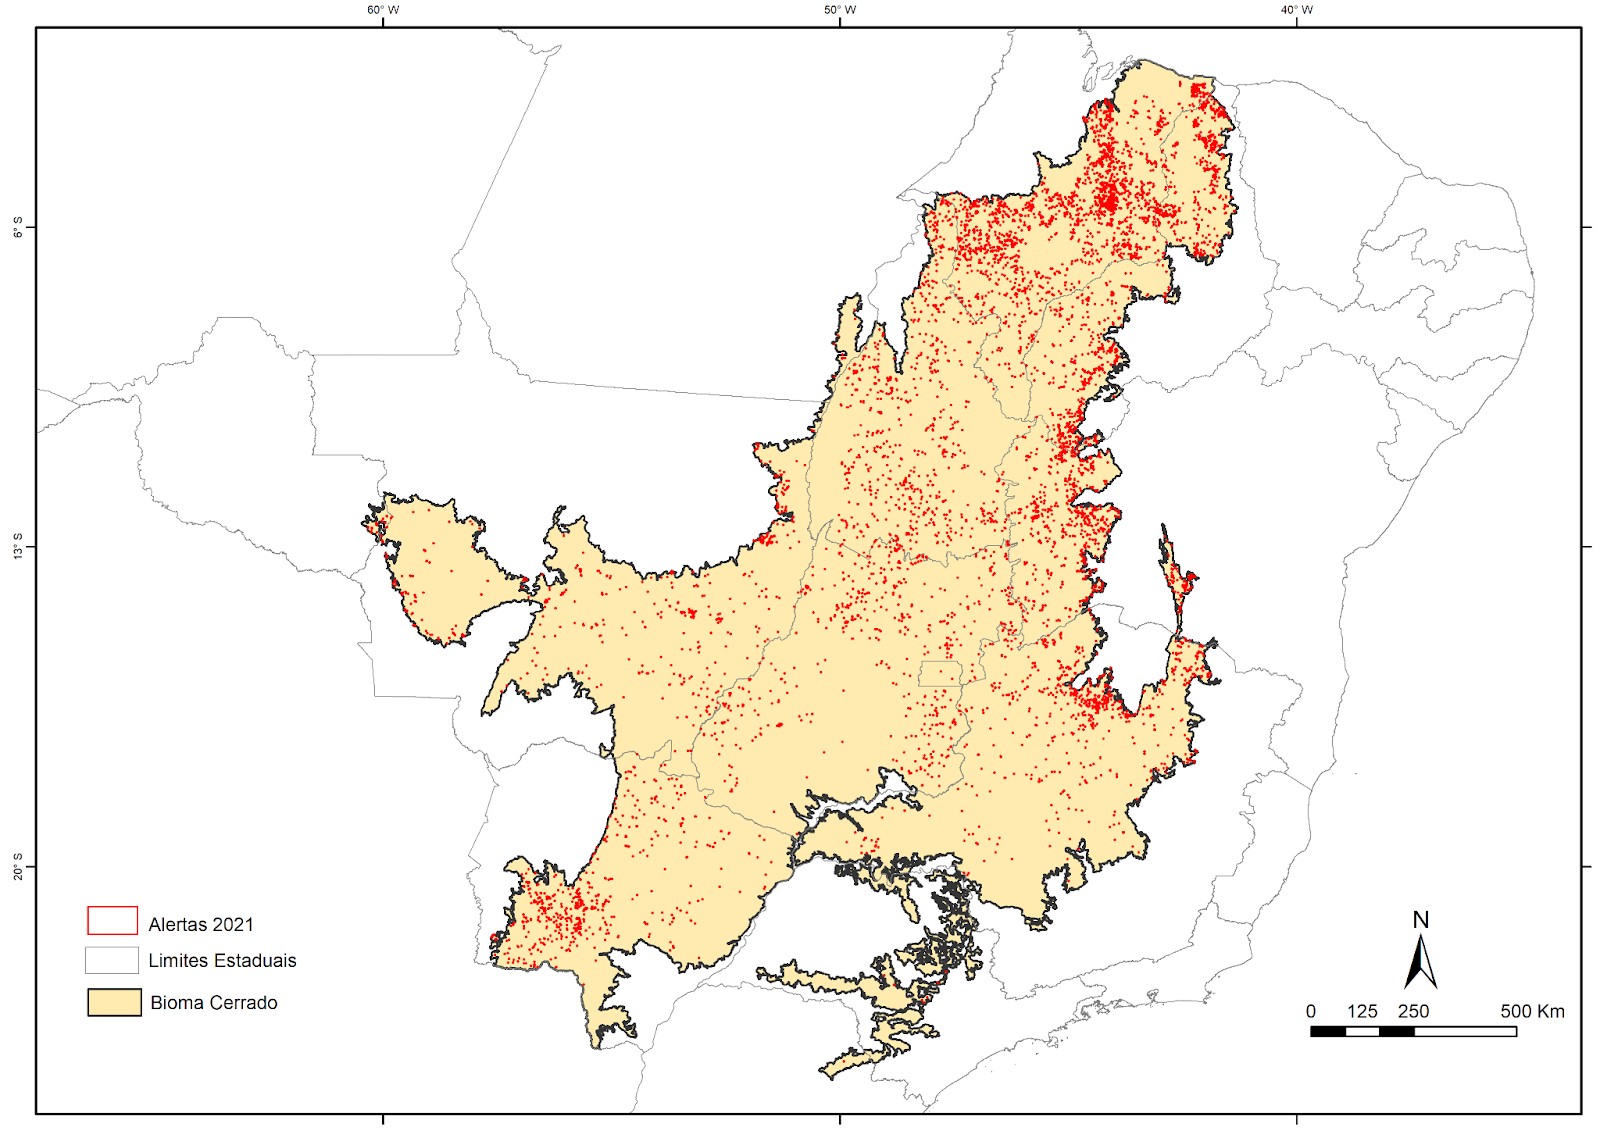 Mapa do bioma Cerrado com os alertas de área desmatada registrados em 2021 (Foto: IPAM/MapBiomas)